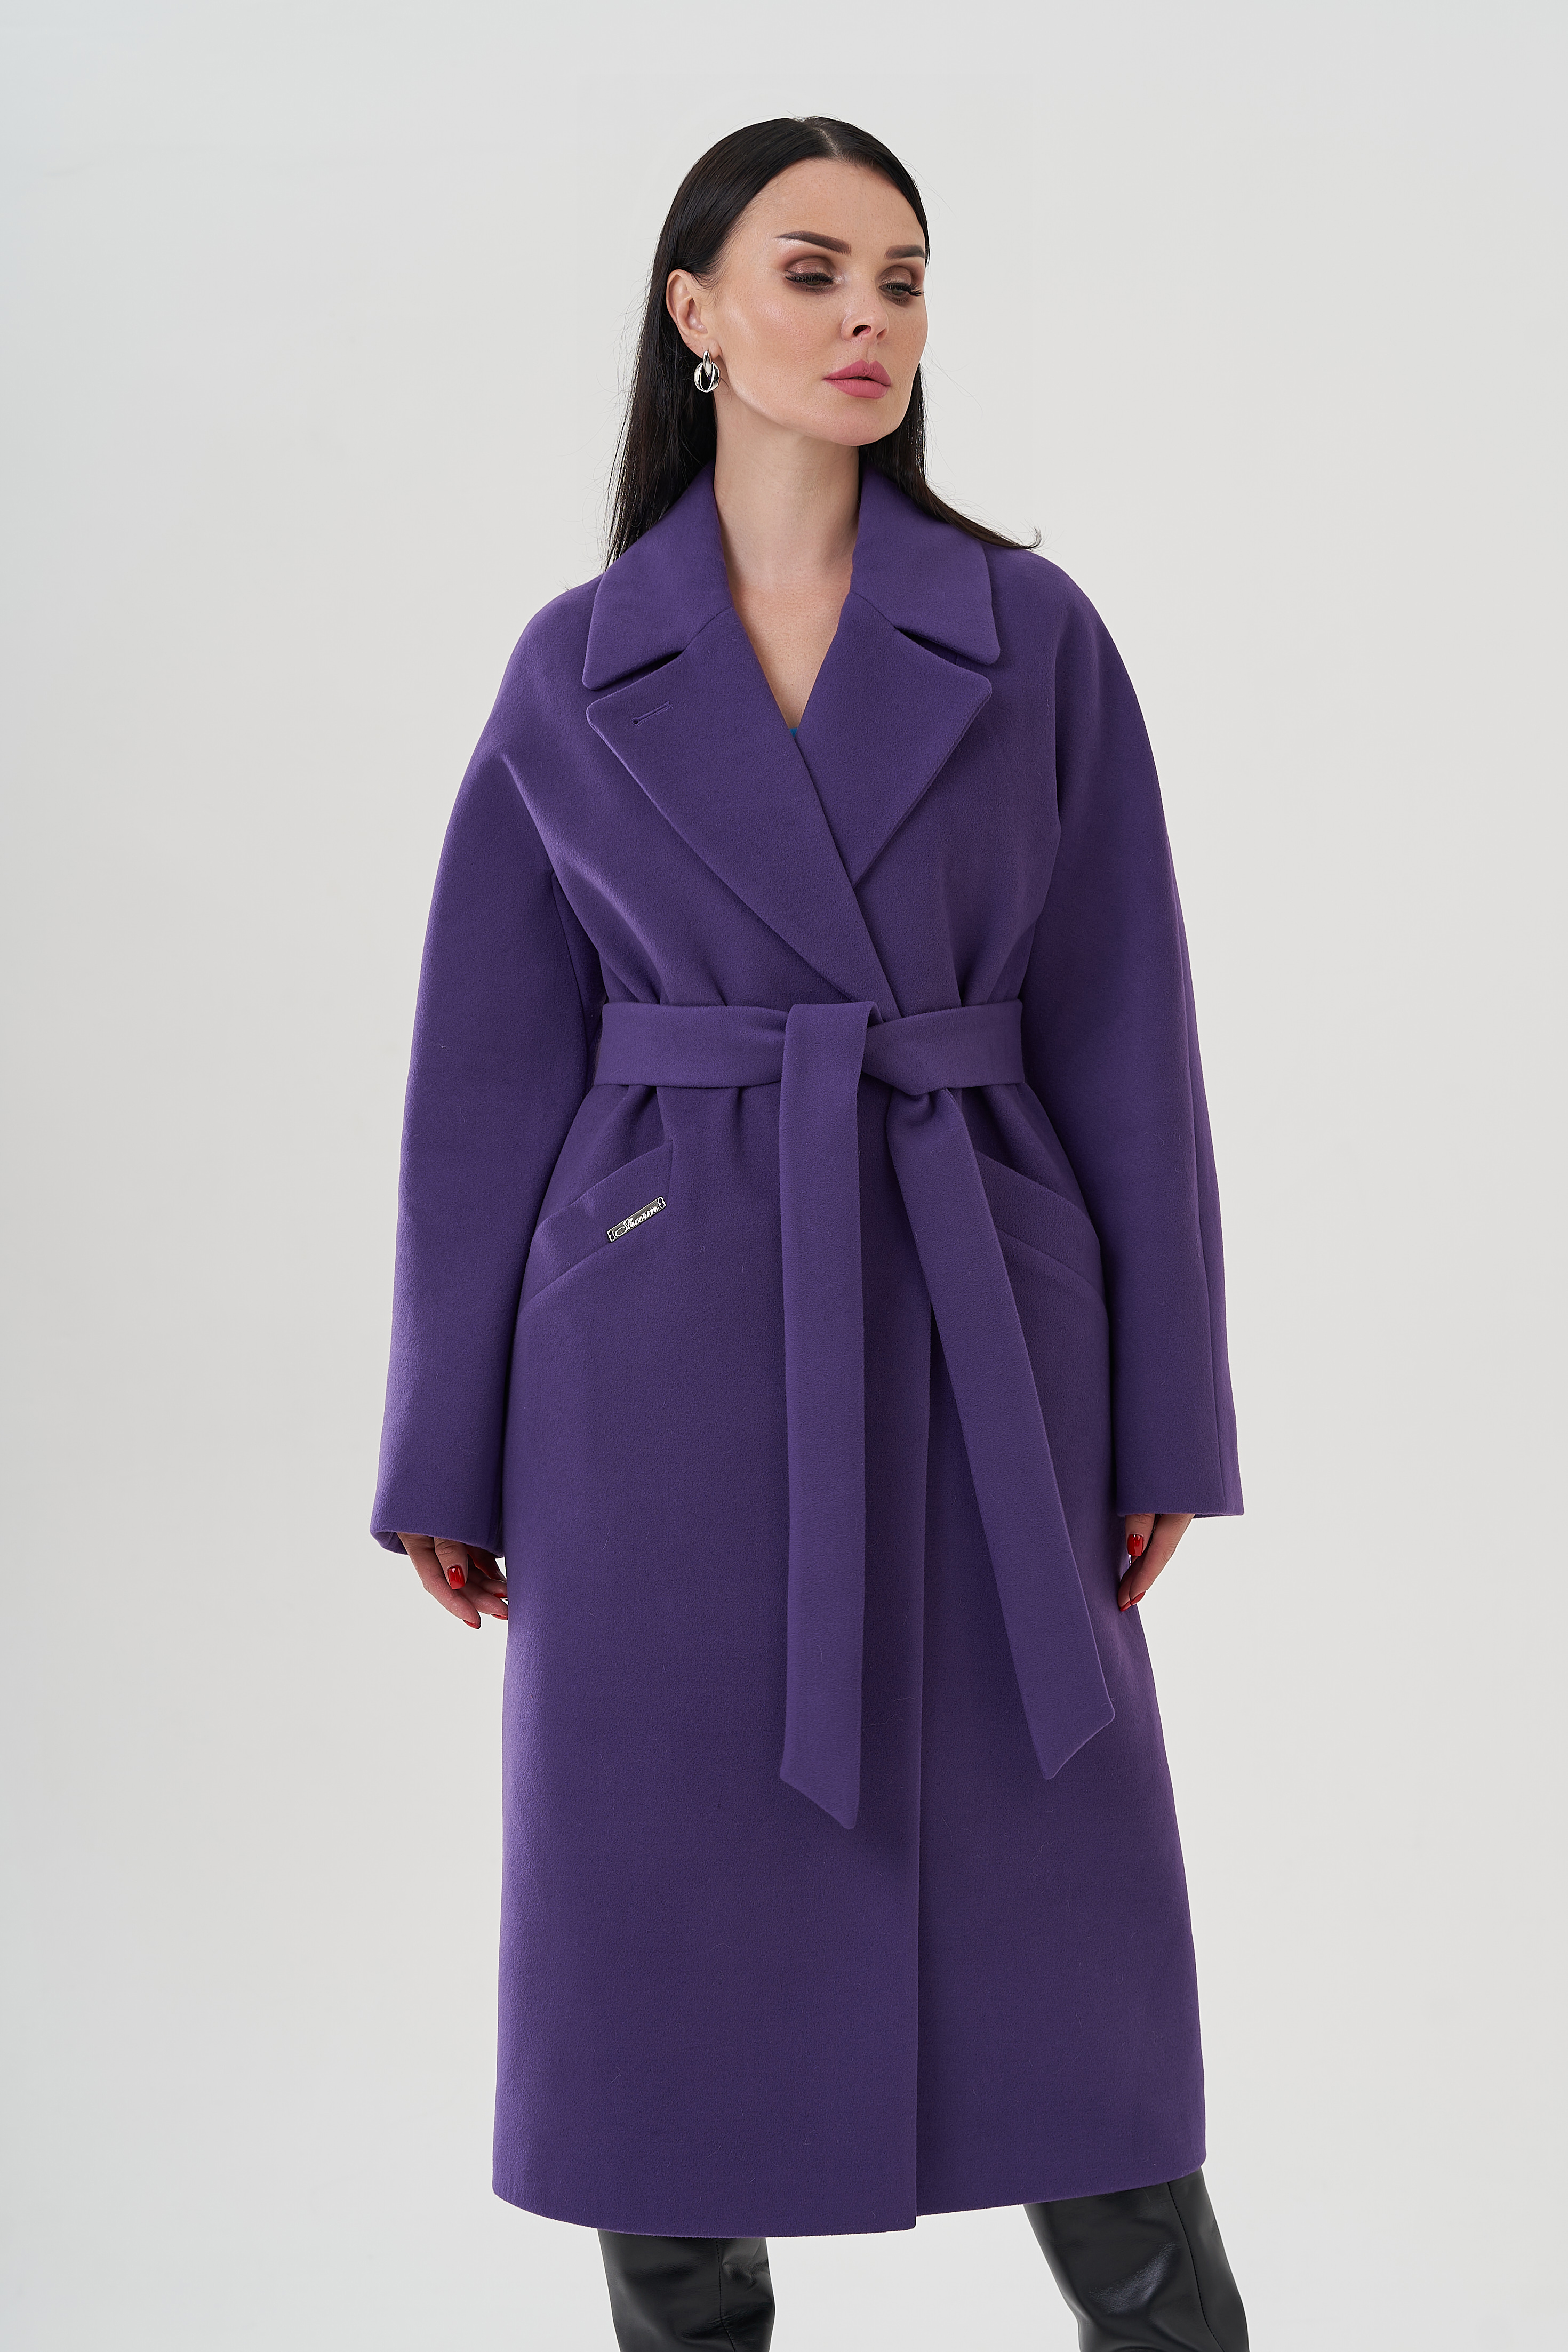 Пальто фиолетового цвета с английским воротником 24712 (фиолетовый) купить в интернет-магазине с доставкой